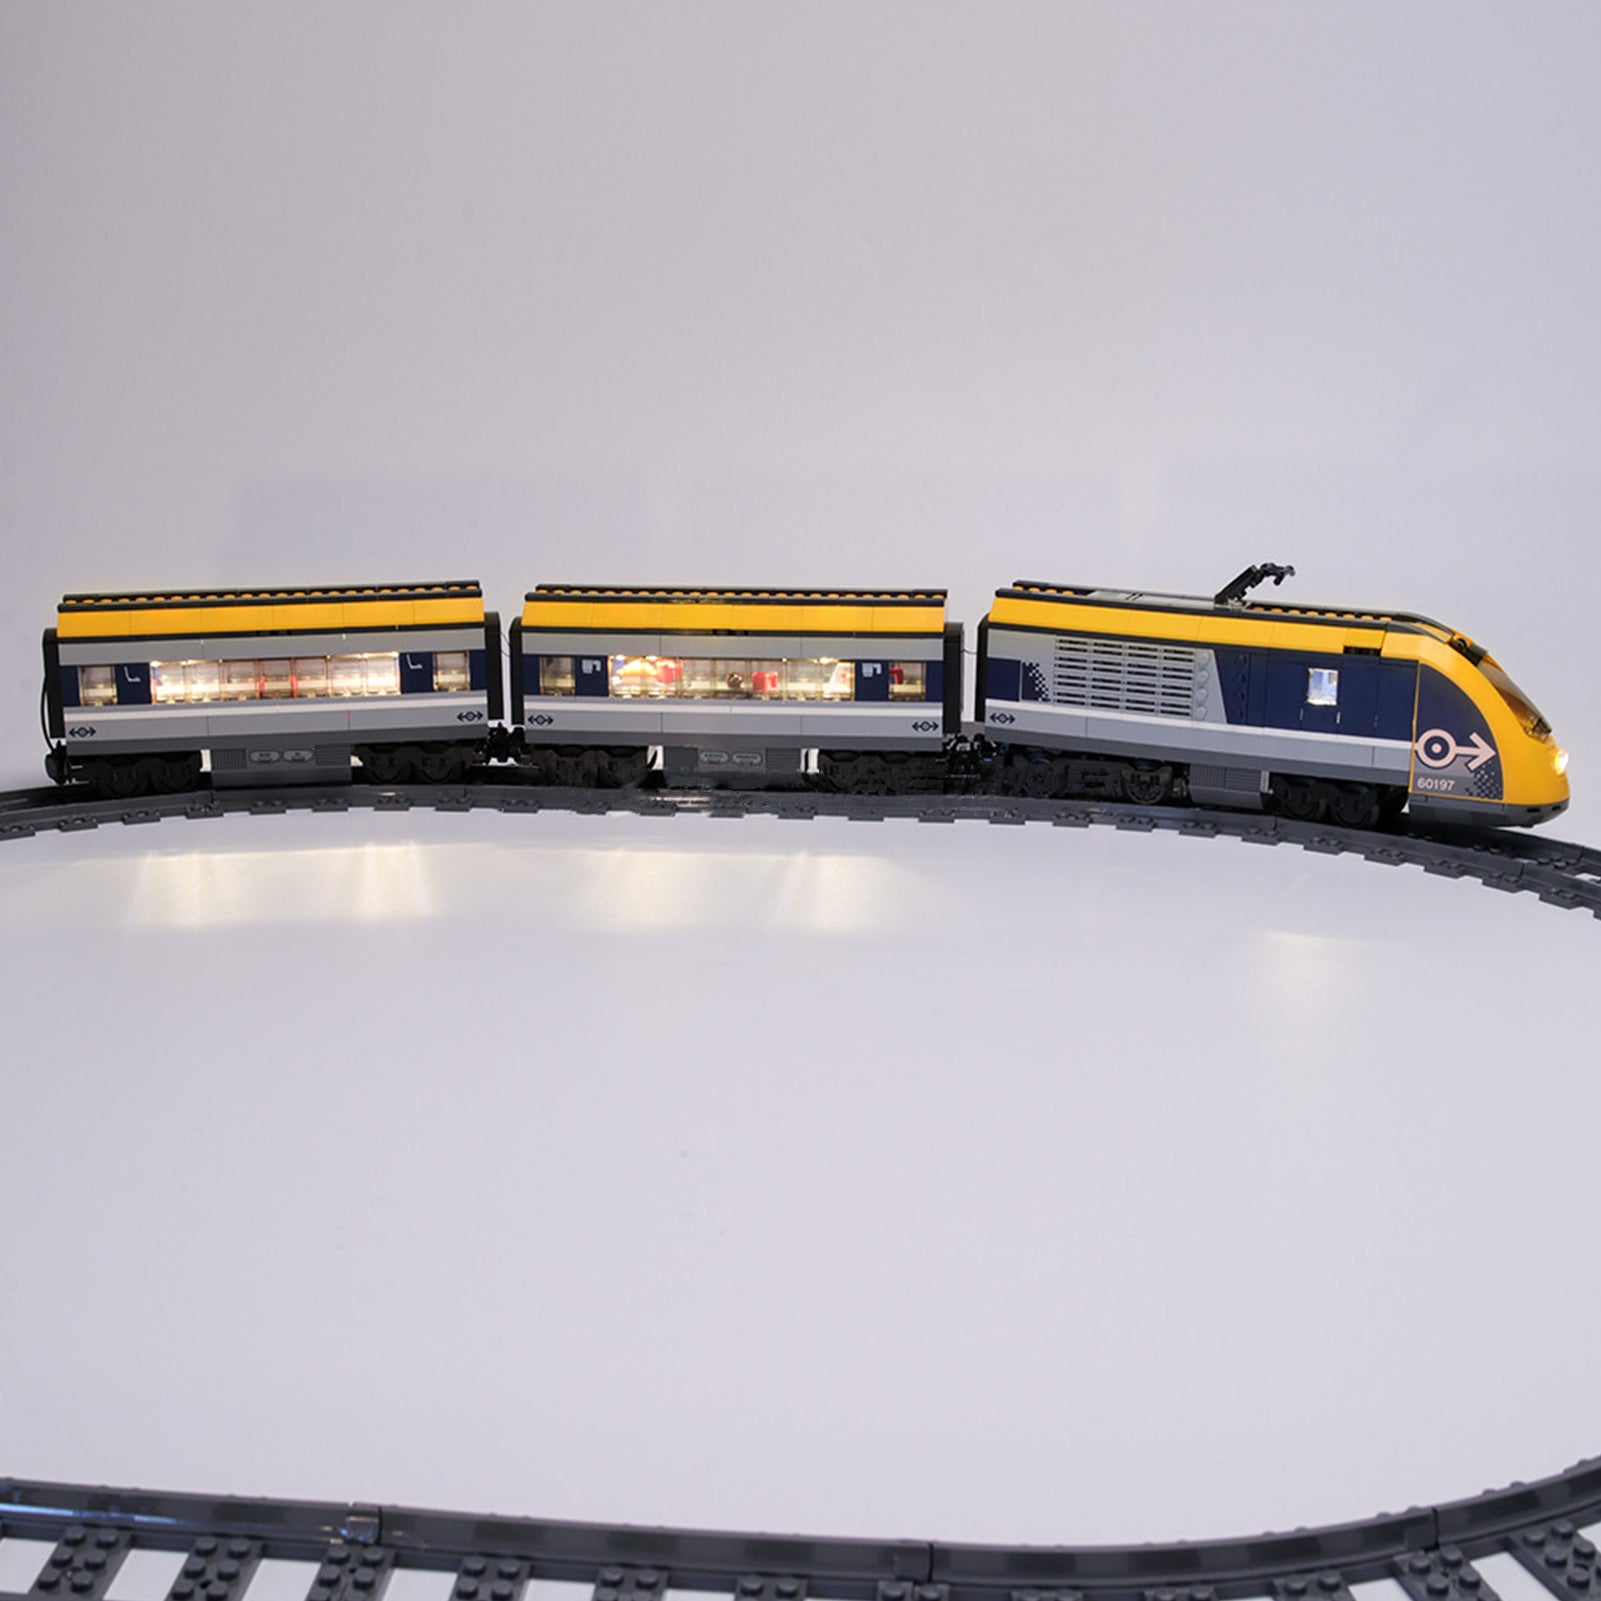 Light kit for Lego 60197 City Passenger Train